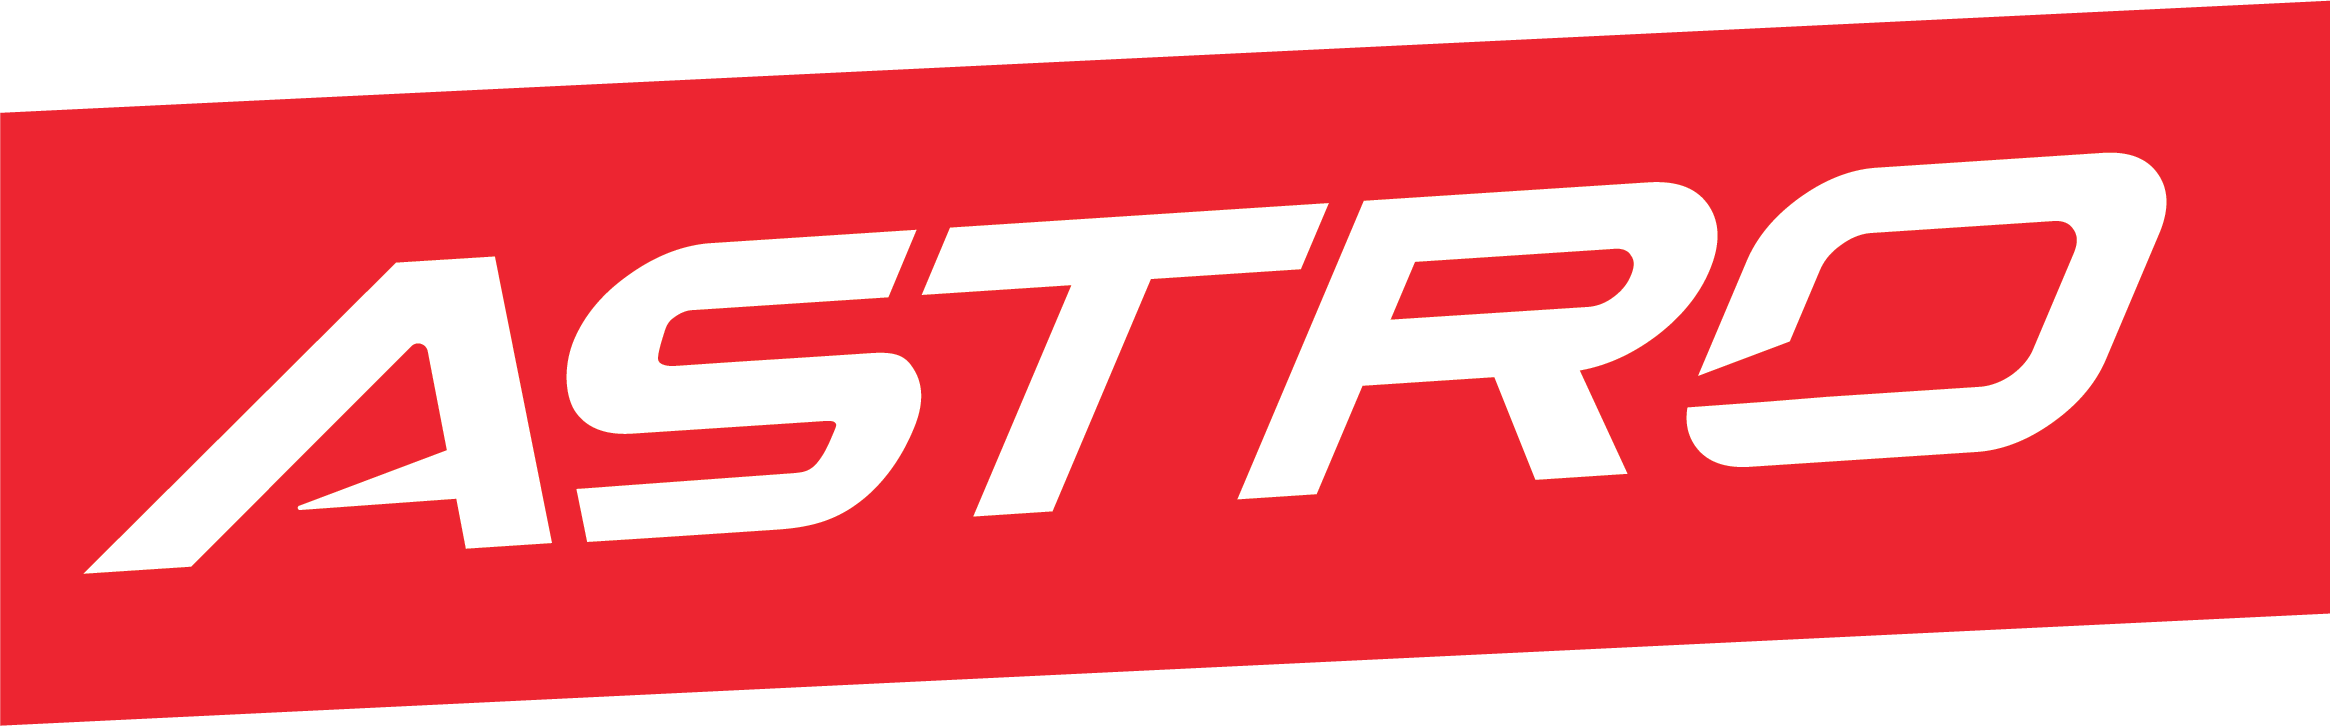 Logo-astro-indonesia